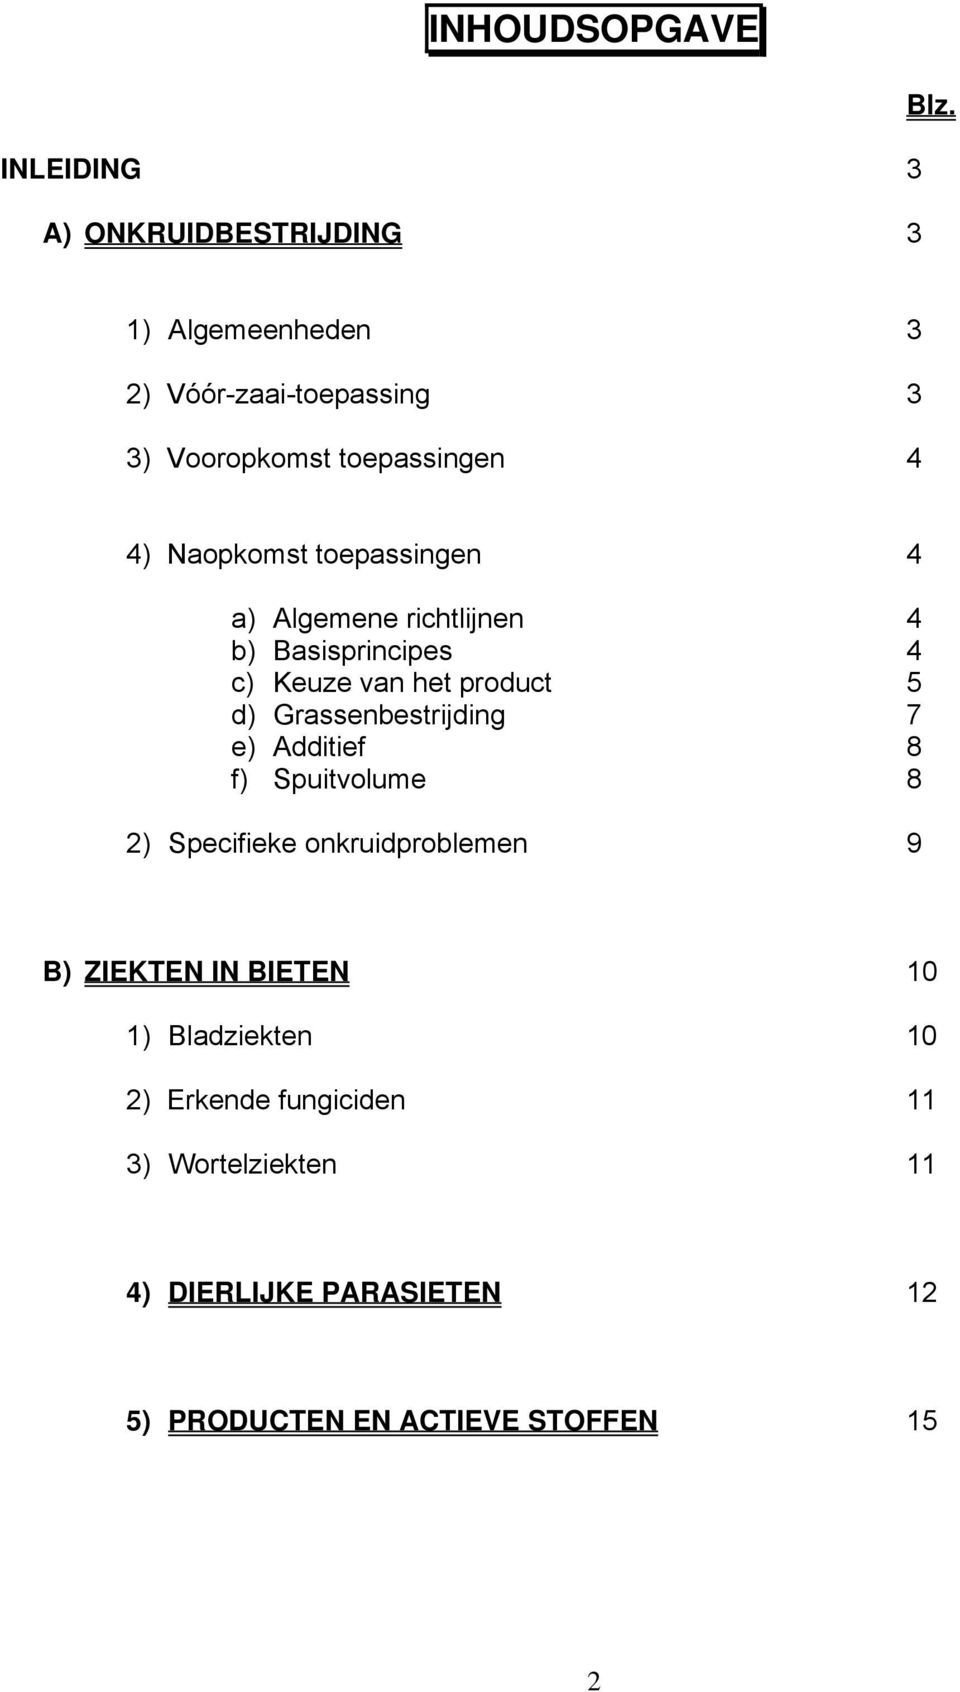 richtlijnen 4 b) Basisprincipes 4 c) Keuze van het product 5 d) Grassenbestrijding 7 e) Additief 8 f) Spuitvolume 8